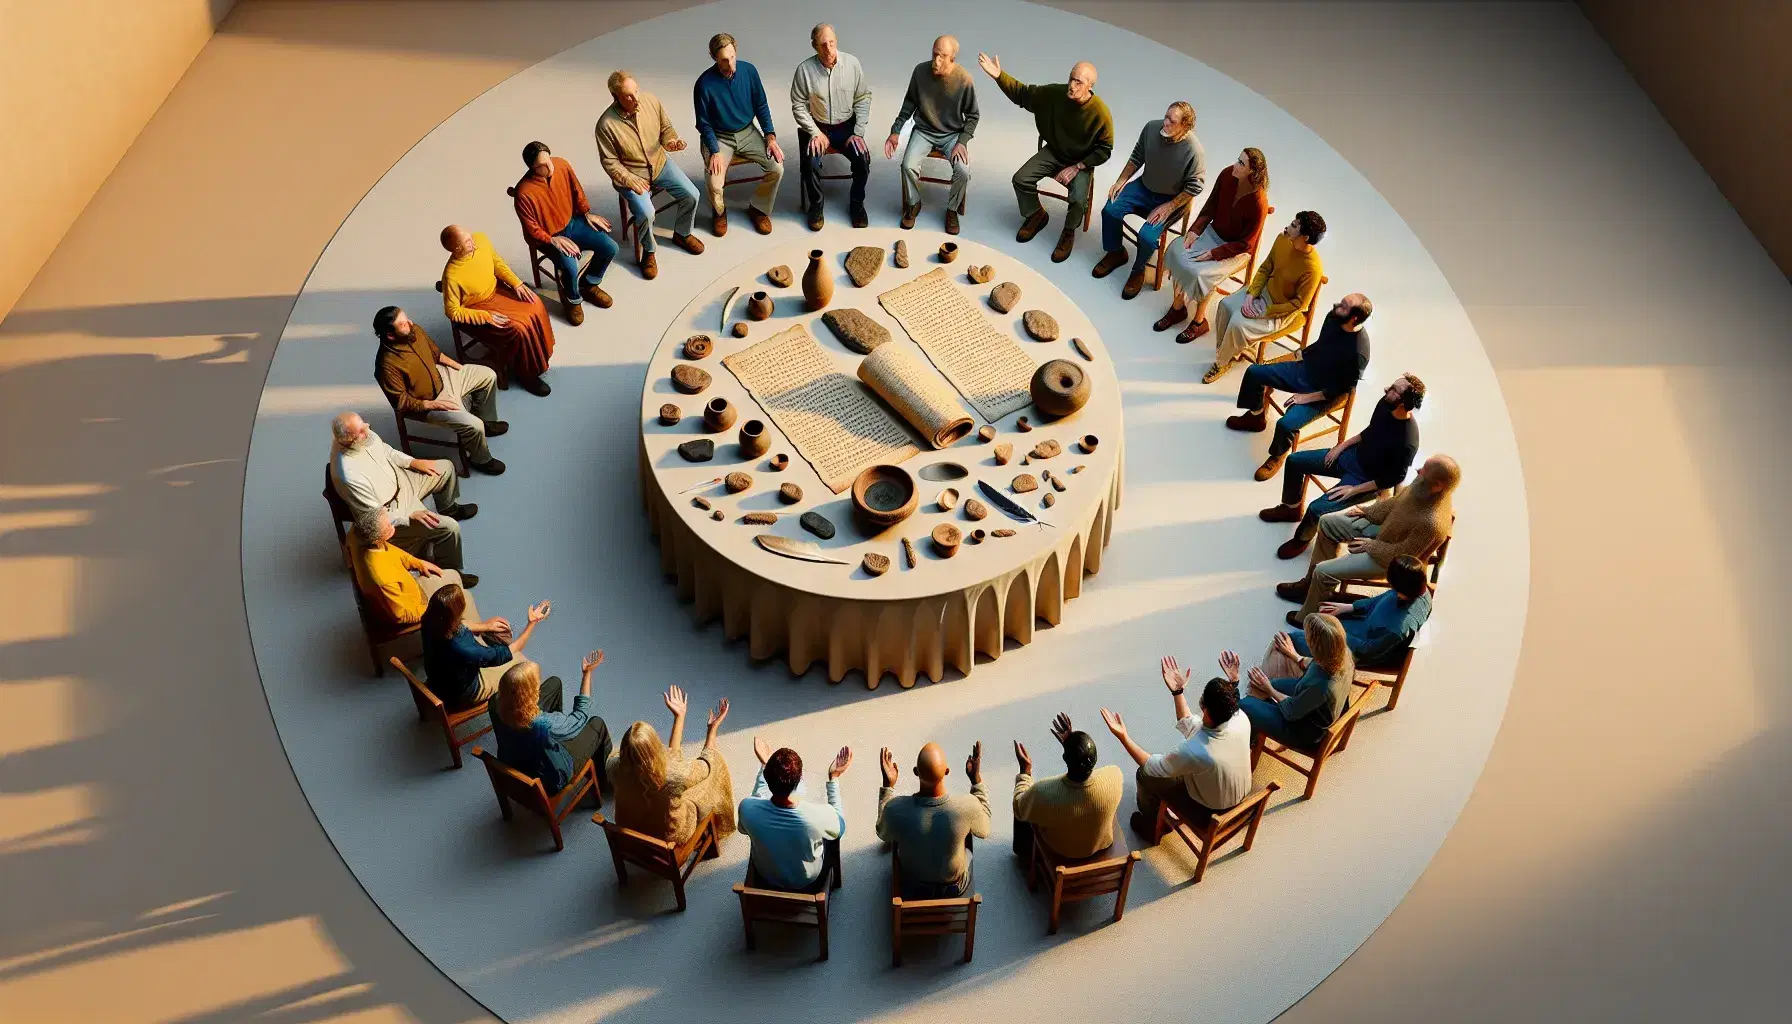 Grupo diverso de personas en discusión animada alrededor de una mesa con réplicas de artefactos antiguos bajo luz natural.